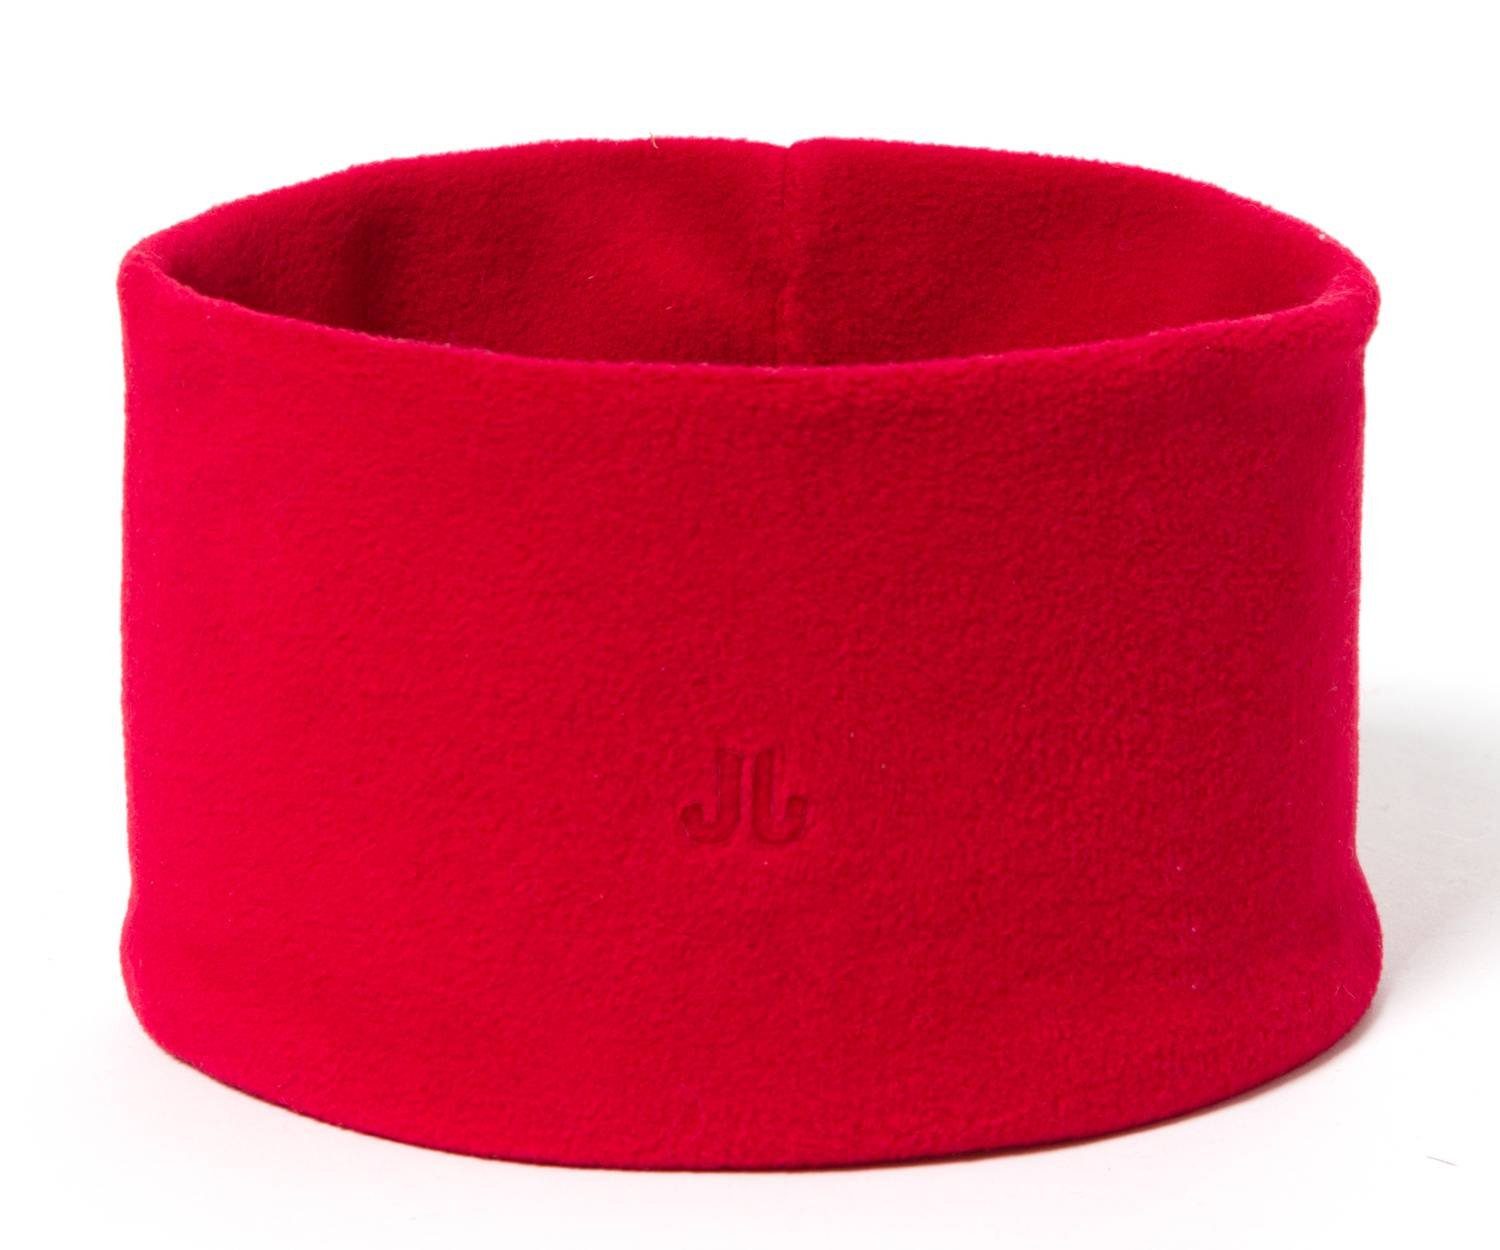 Stirnband Jam Unisex Sportliches doppellagig Stirnband Jail aus Red Microfleece,